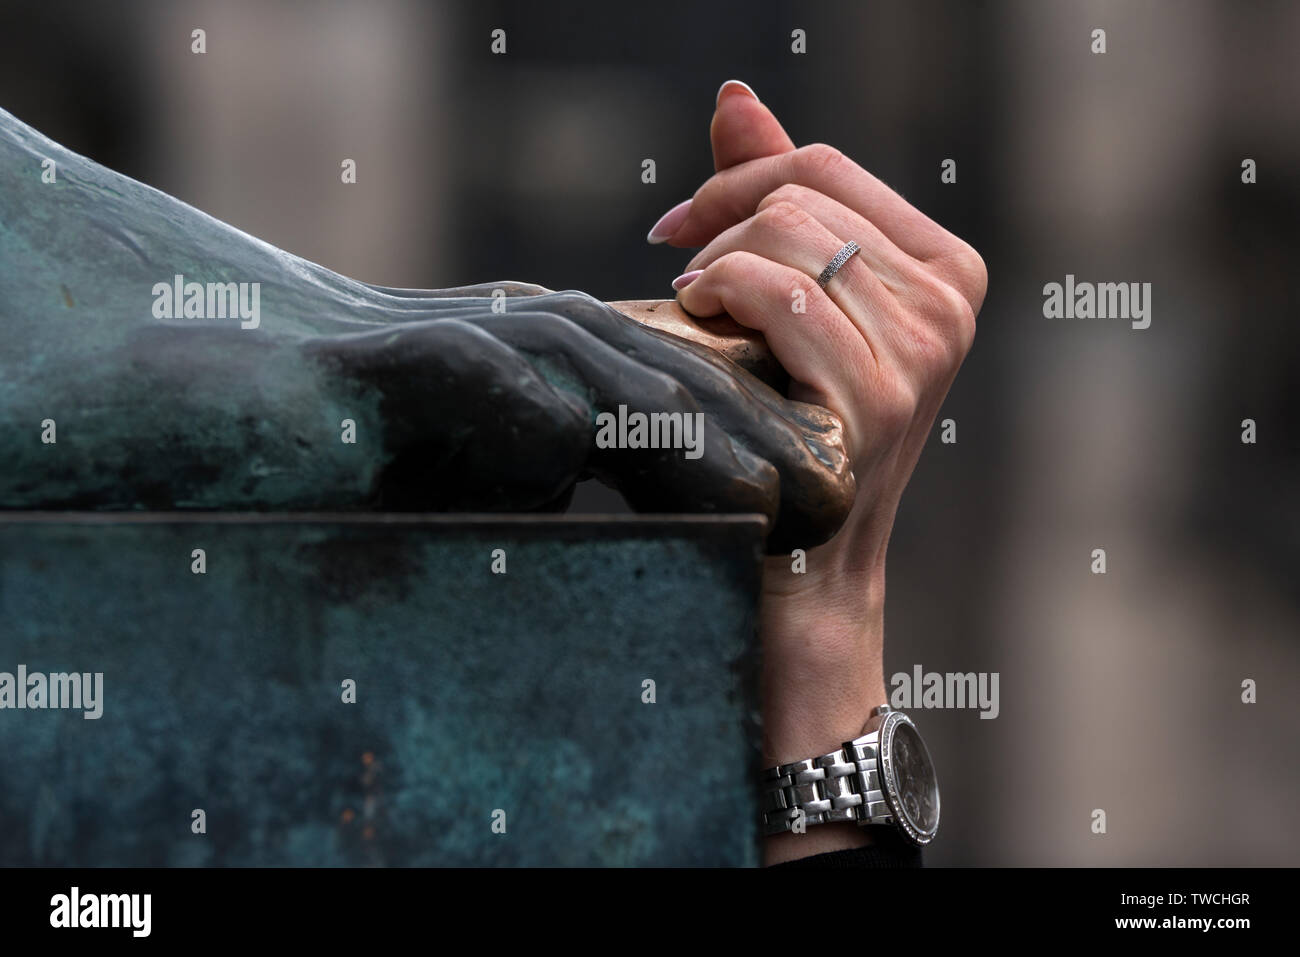 Une main a touché le bord de la statue de David Hume pour chance sur le Royal Mile, dans la vieille ville d'Édimbourg, Écosse, Royaume-Uni. Banque D'Images